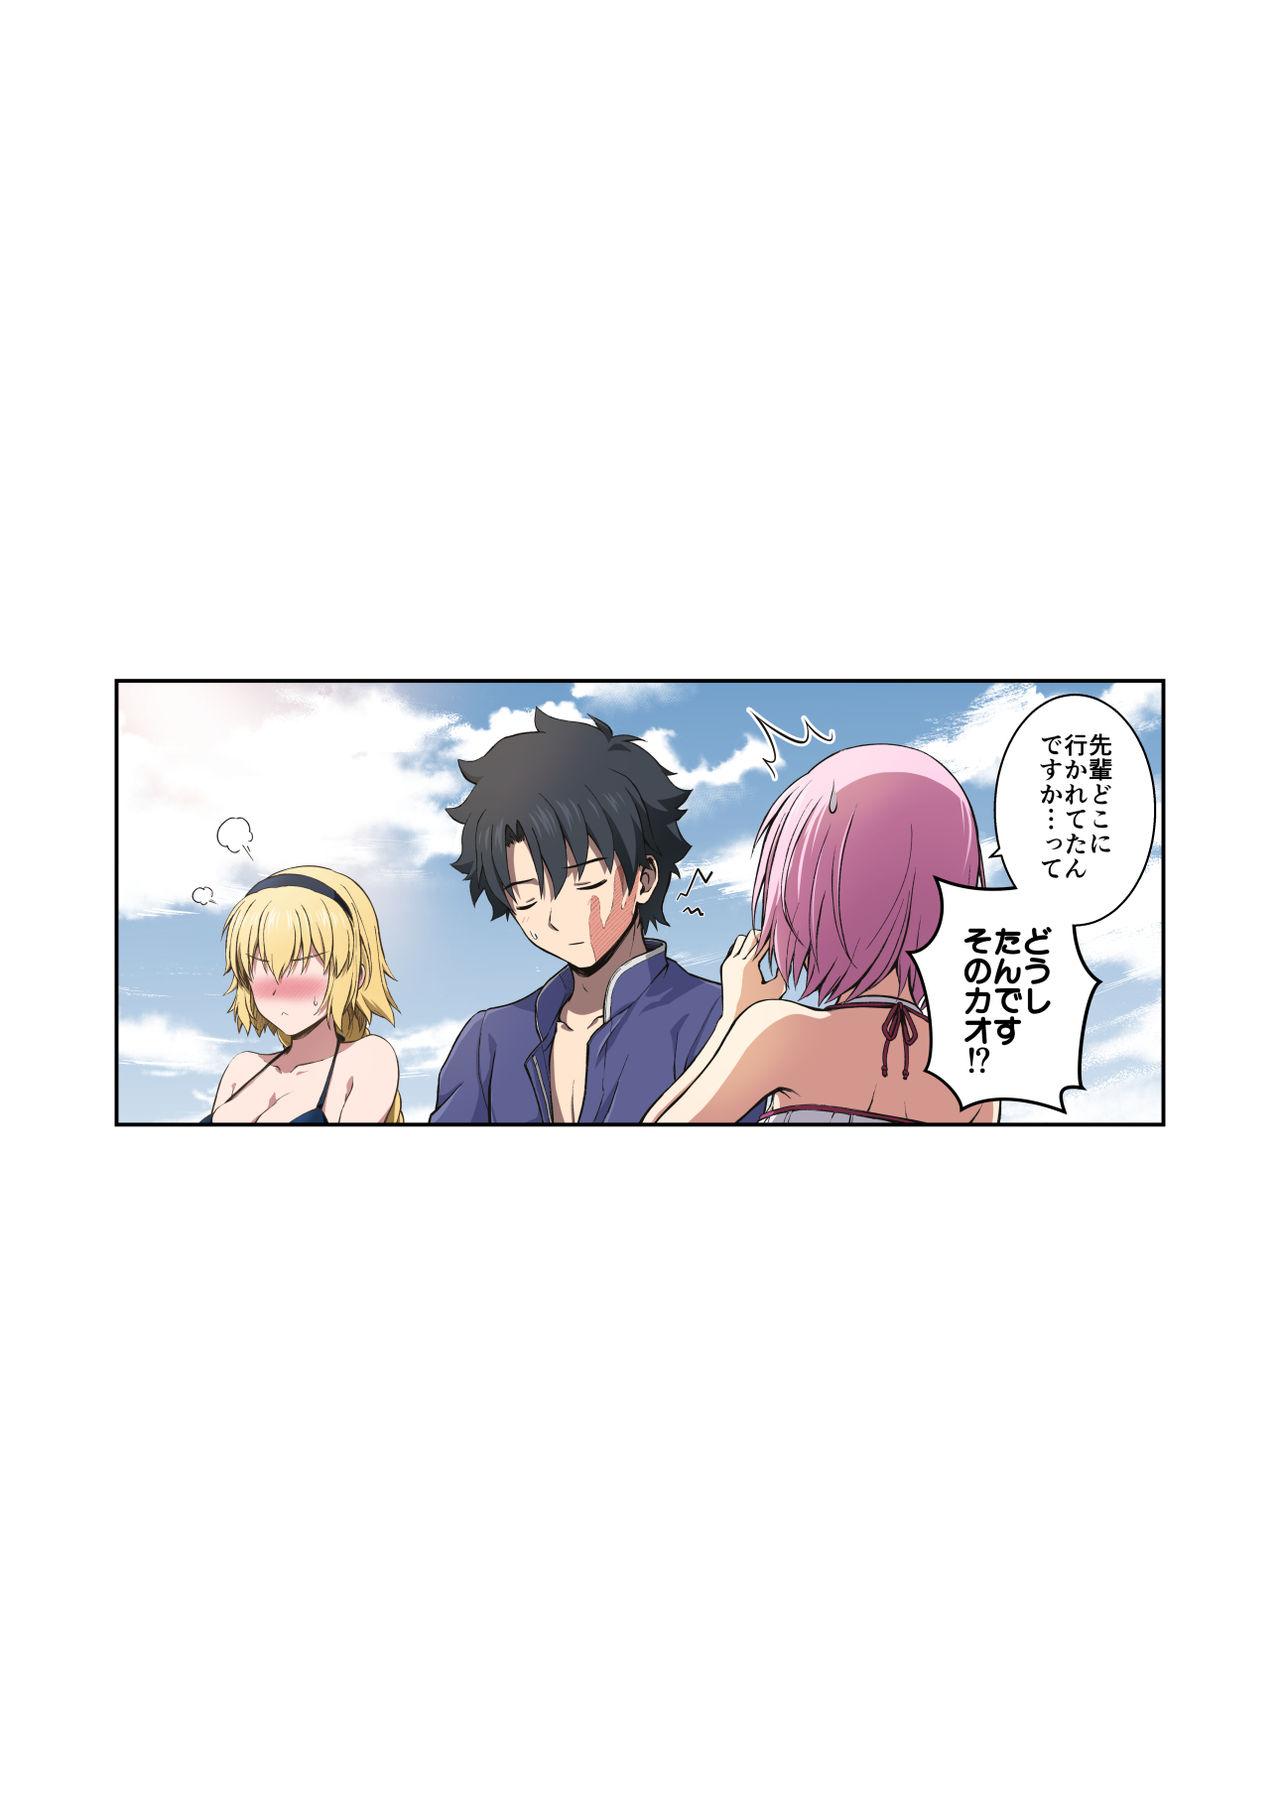 『Jeanne to Natsu no Umi』 Omake Manga 3